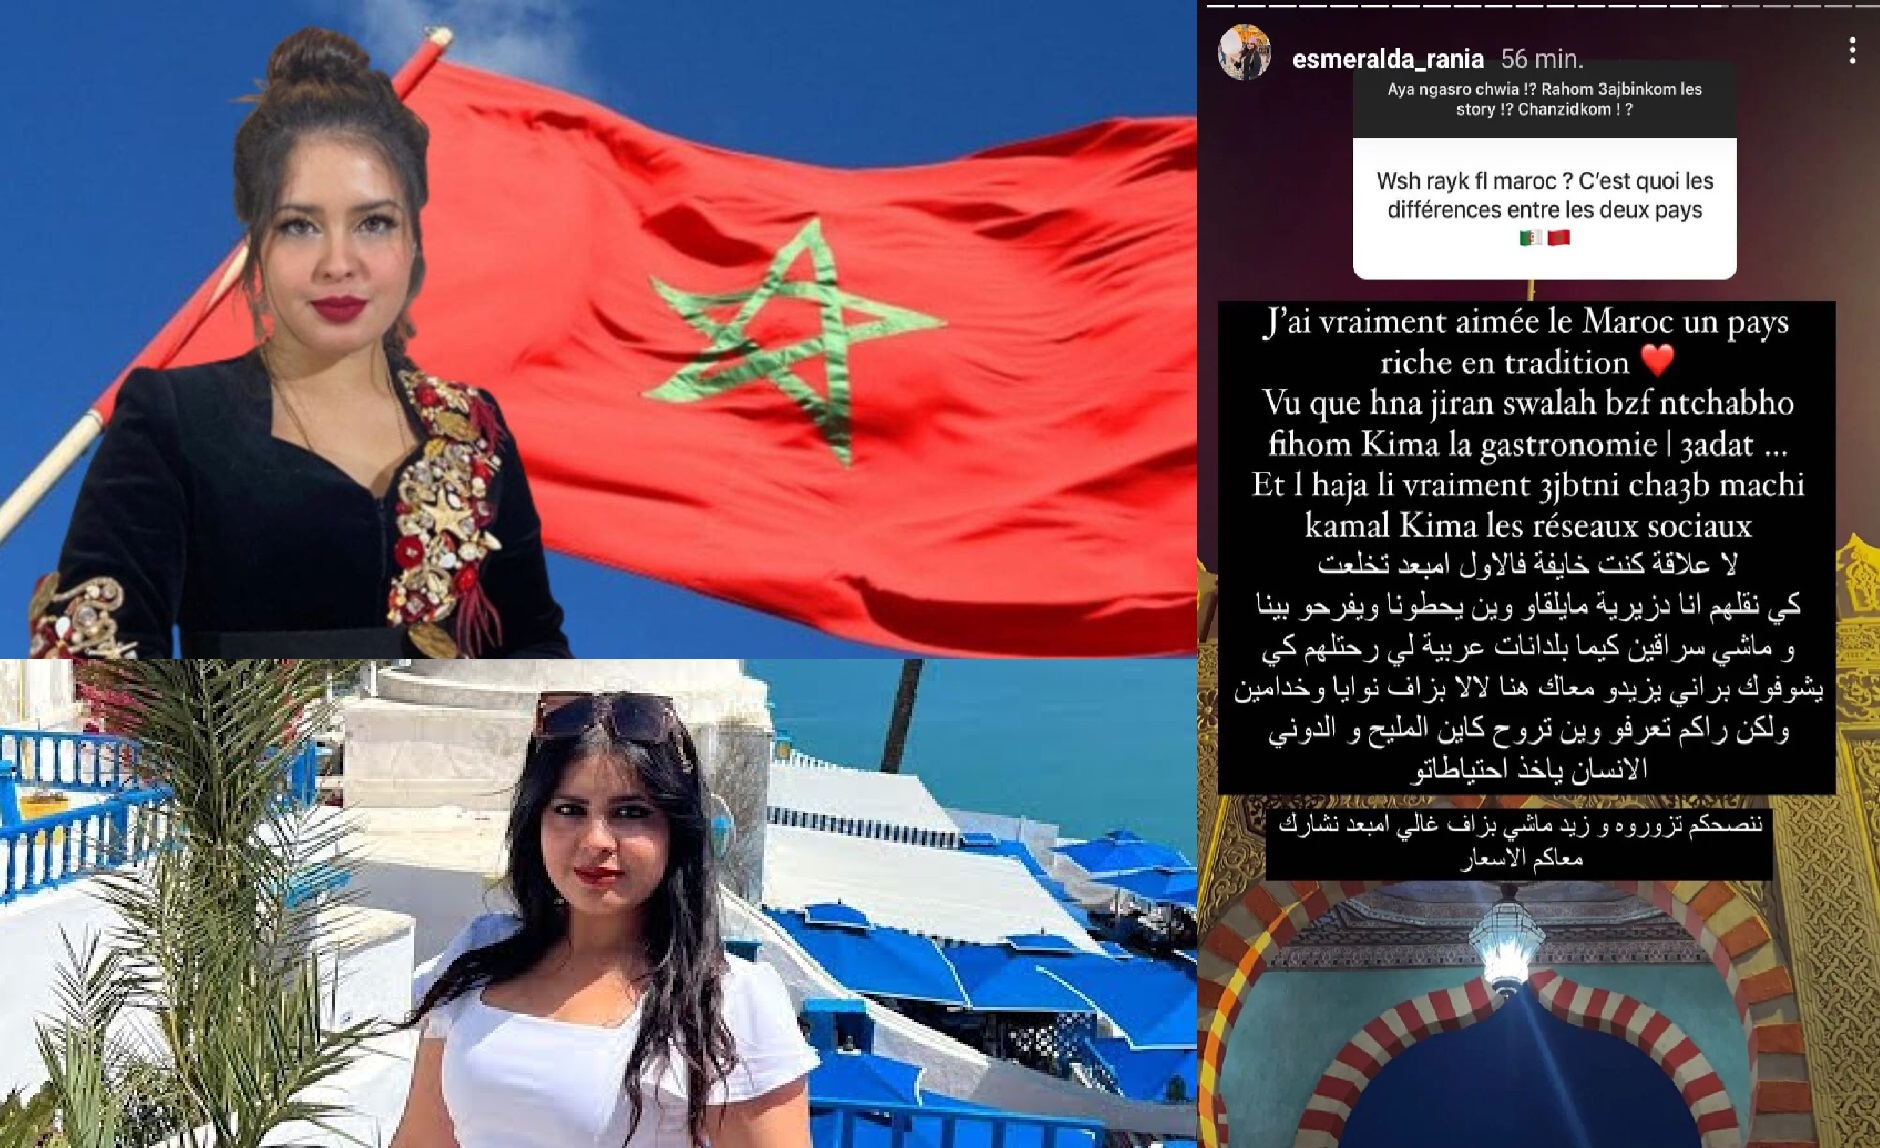 المؤثرة الجزائرية “إزميرالدة” تقضي عطلتها بالمغرب  وتشيد بشعبه  وتدعو محبيها لزيارته (فيديو)